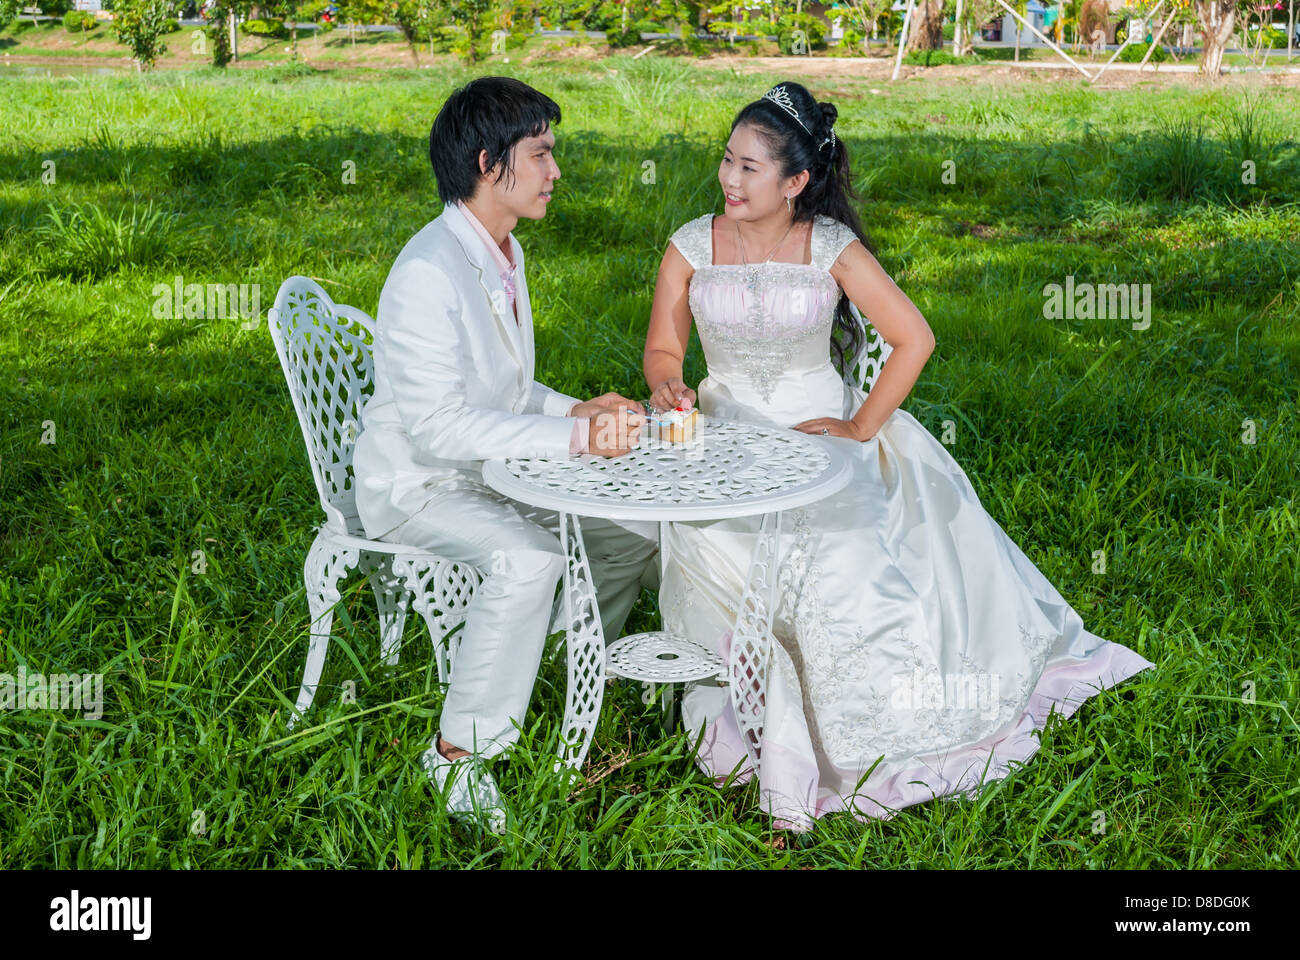 Asian nuziale Tailandese con un pezzo di torta di nozze in questo momento come il principe e la principessa Foto Stock